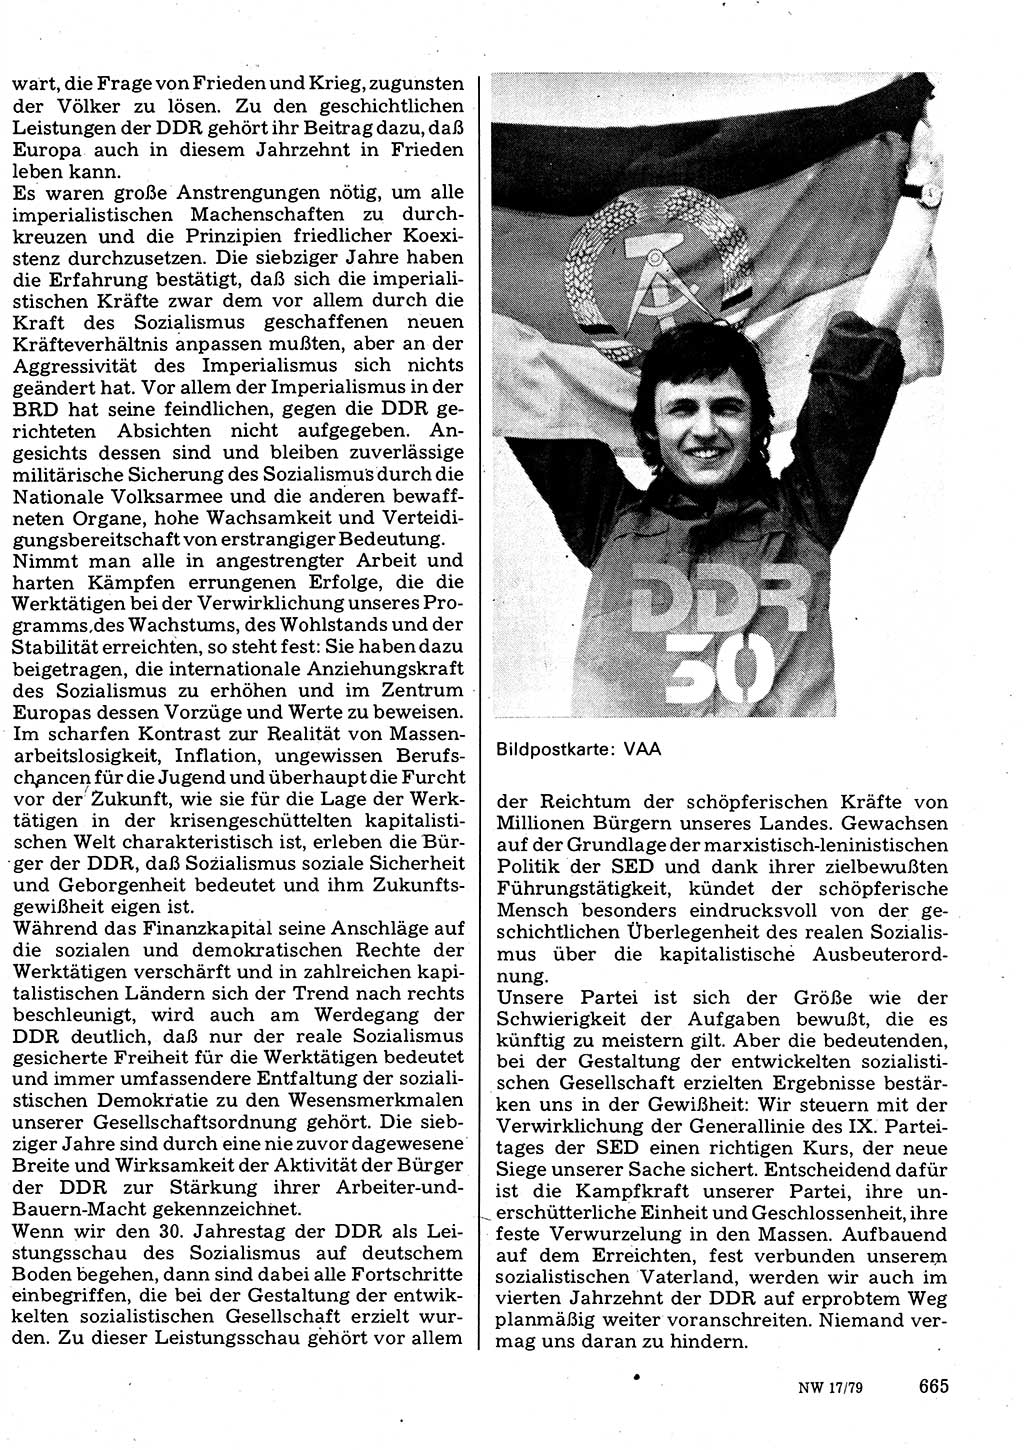 Neuer Weg (NW), Organ des Zentralkomitees (ZK) der SED (Sozialistische Einheitspartei Deutschlands) fÃ¼r Fragen des Parteilebens, 34. Jahrgang [Deutsche Demokratische Republik (DDR)] 1979, Seite 665 (NW ZK SED DDR 1979, S. 665)